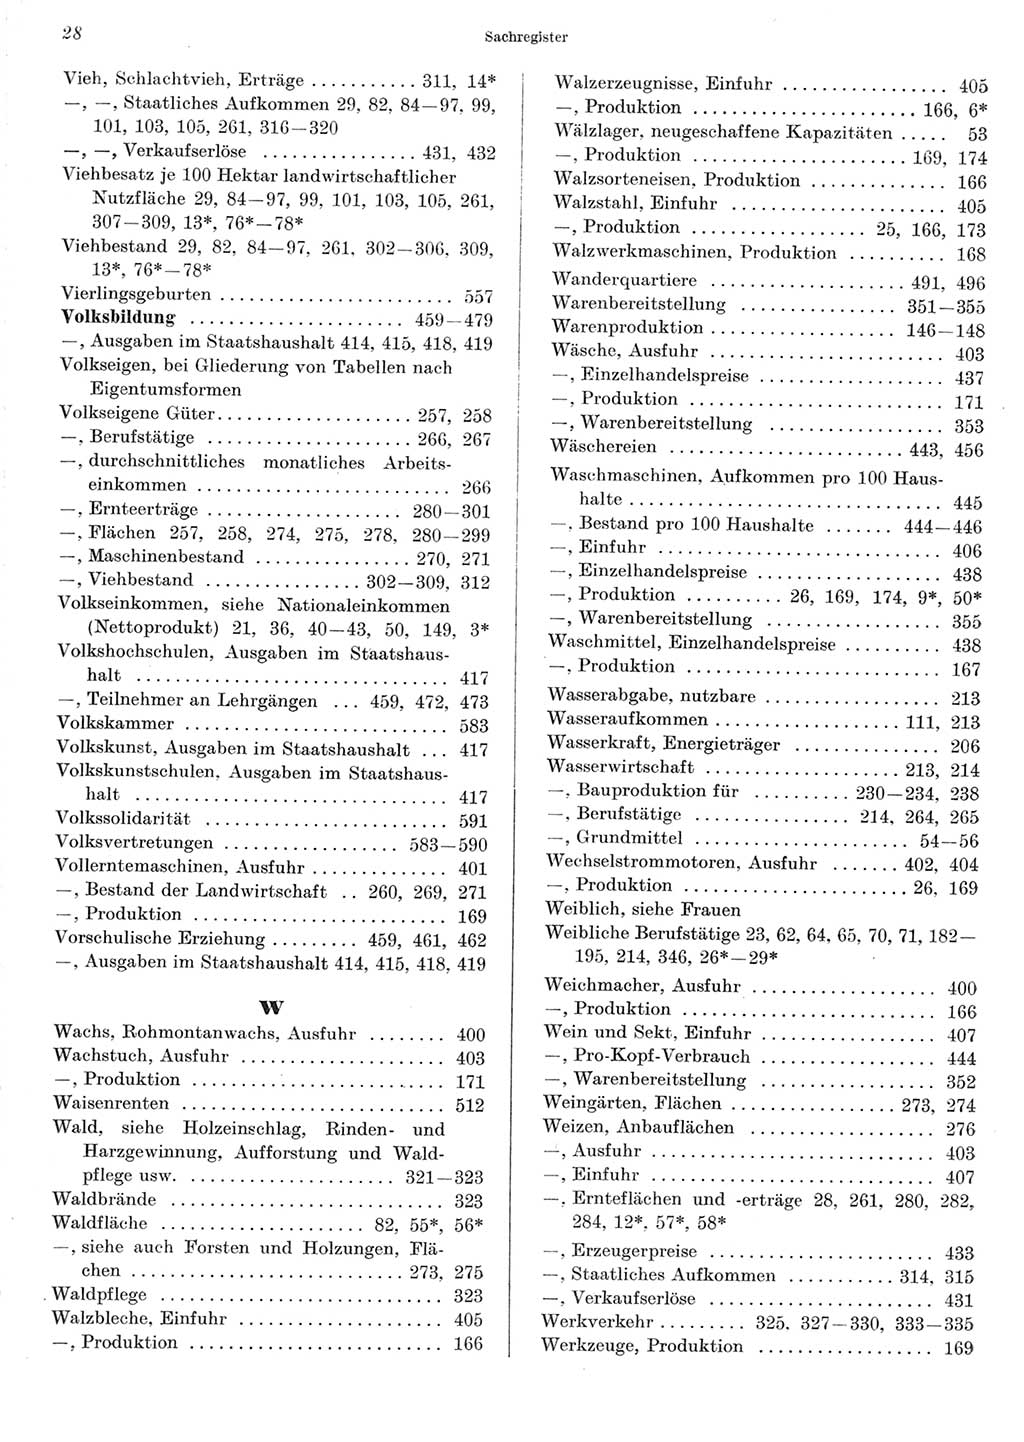 Statistisches Jahrbuch der Deutschen Demokratischen Republik (DDR) 1967, Seite 28 (Stat. Jb. DDR 1967, S. 28)